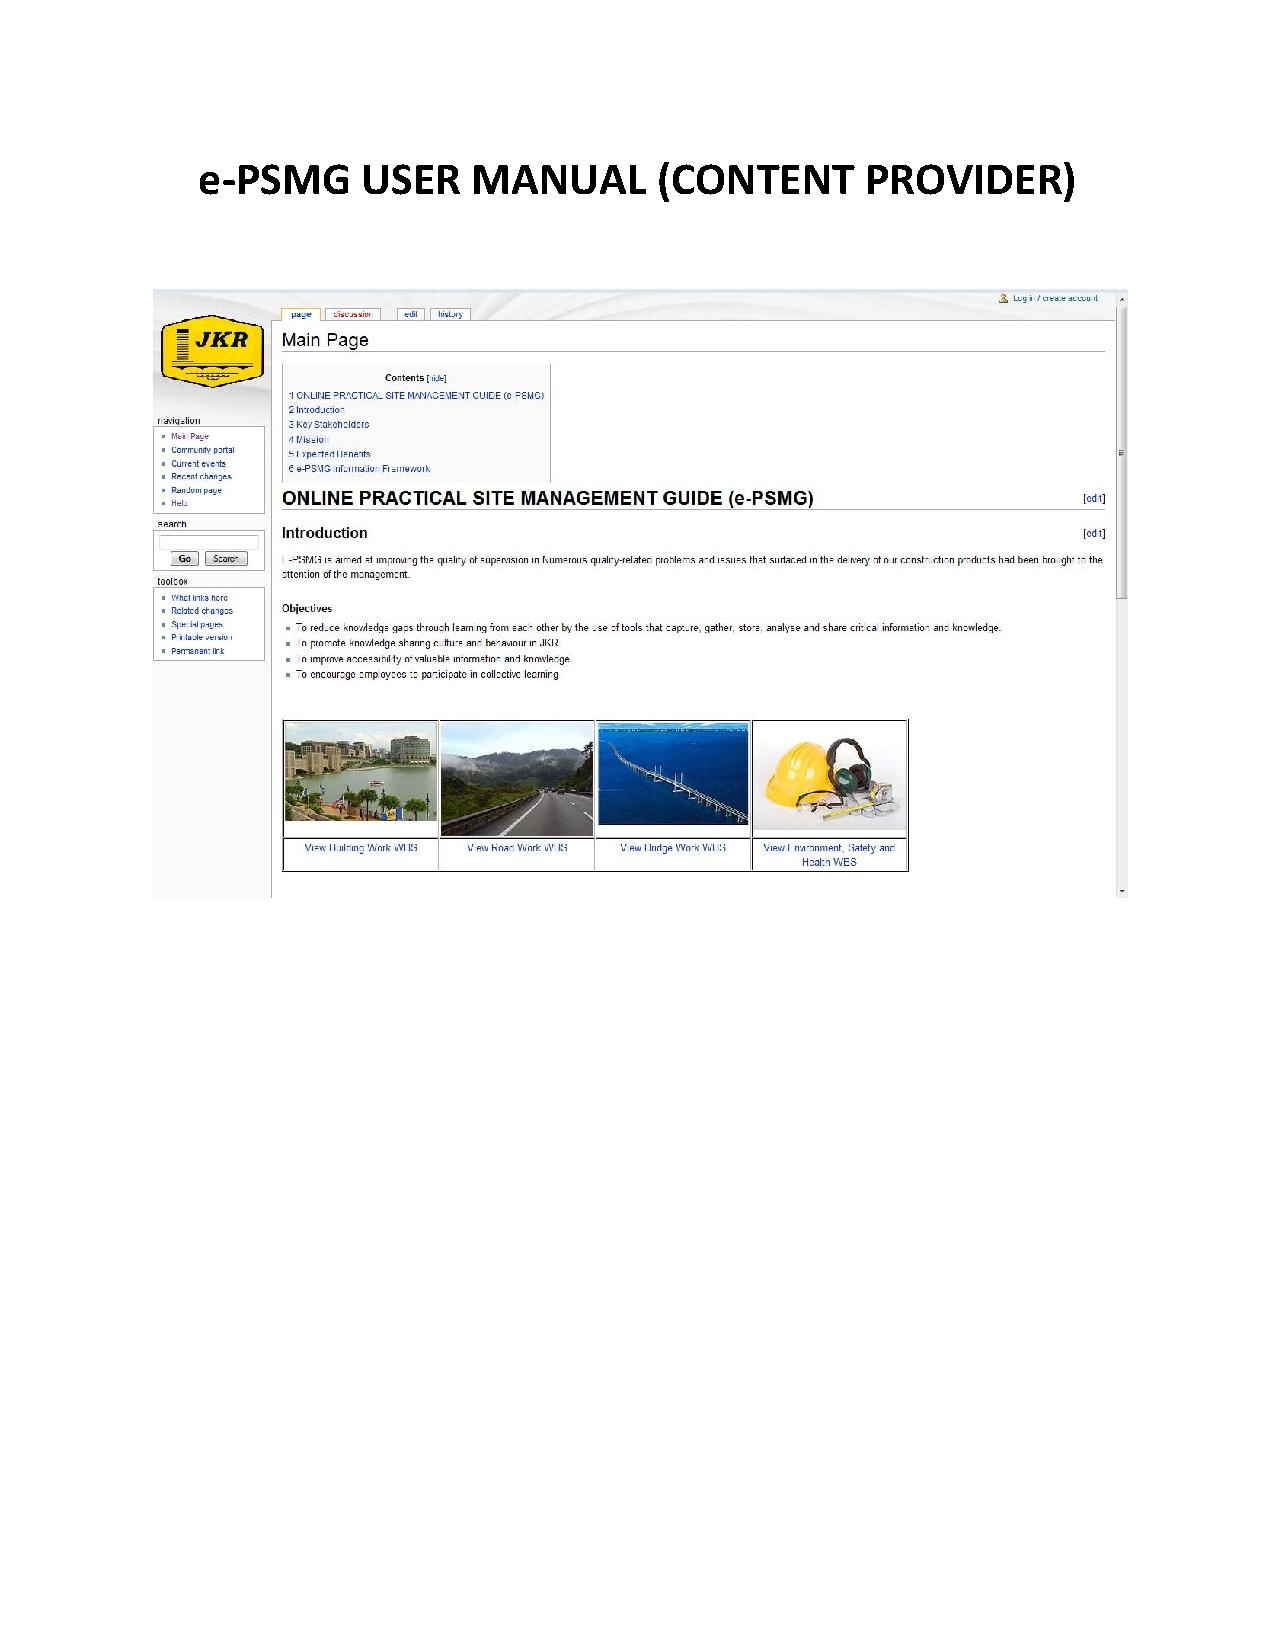 20090913 - EPSMG User Manual-v1.0.pdf